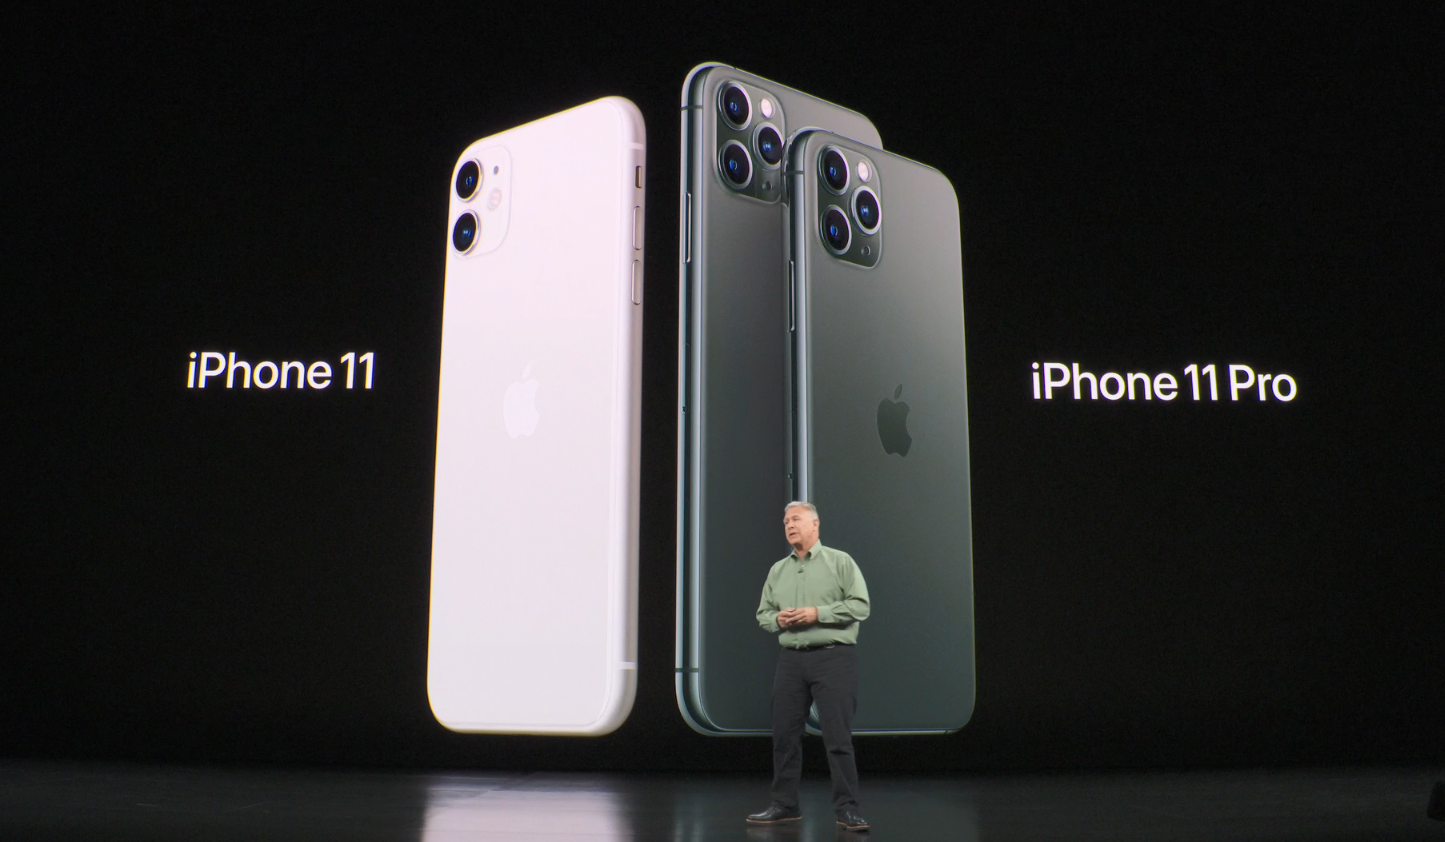   AppleiPhone 11 lanserades på tisdagen